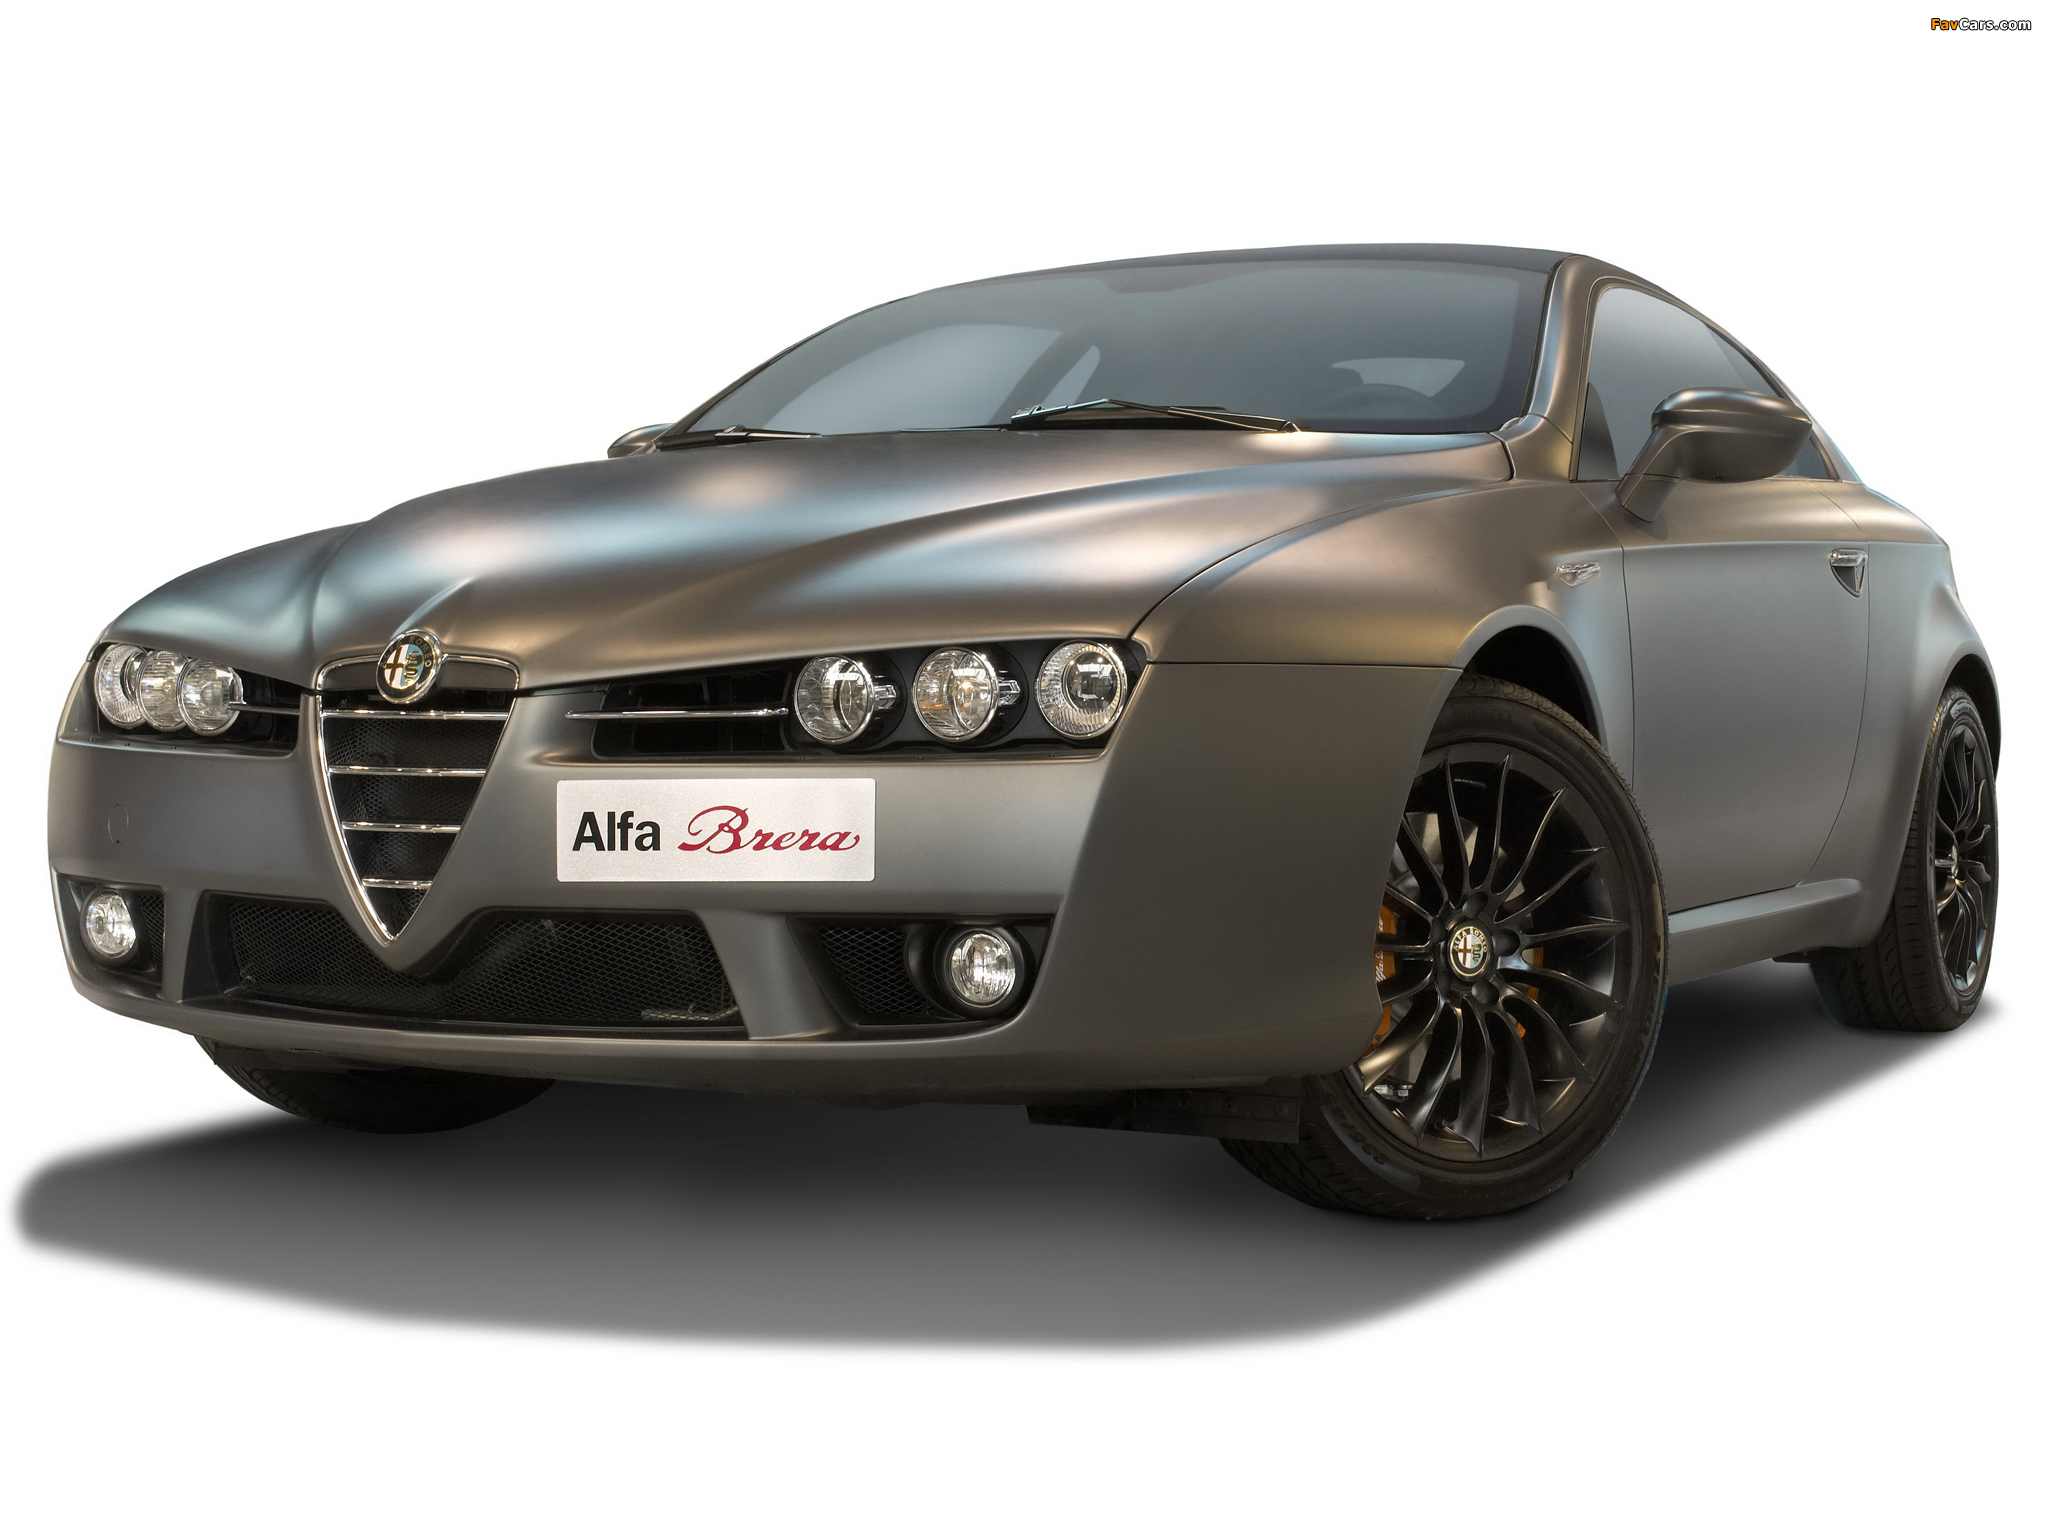 Alfa Romeo Brera Italia Independent 939D (2009) images (2048 x 1536)